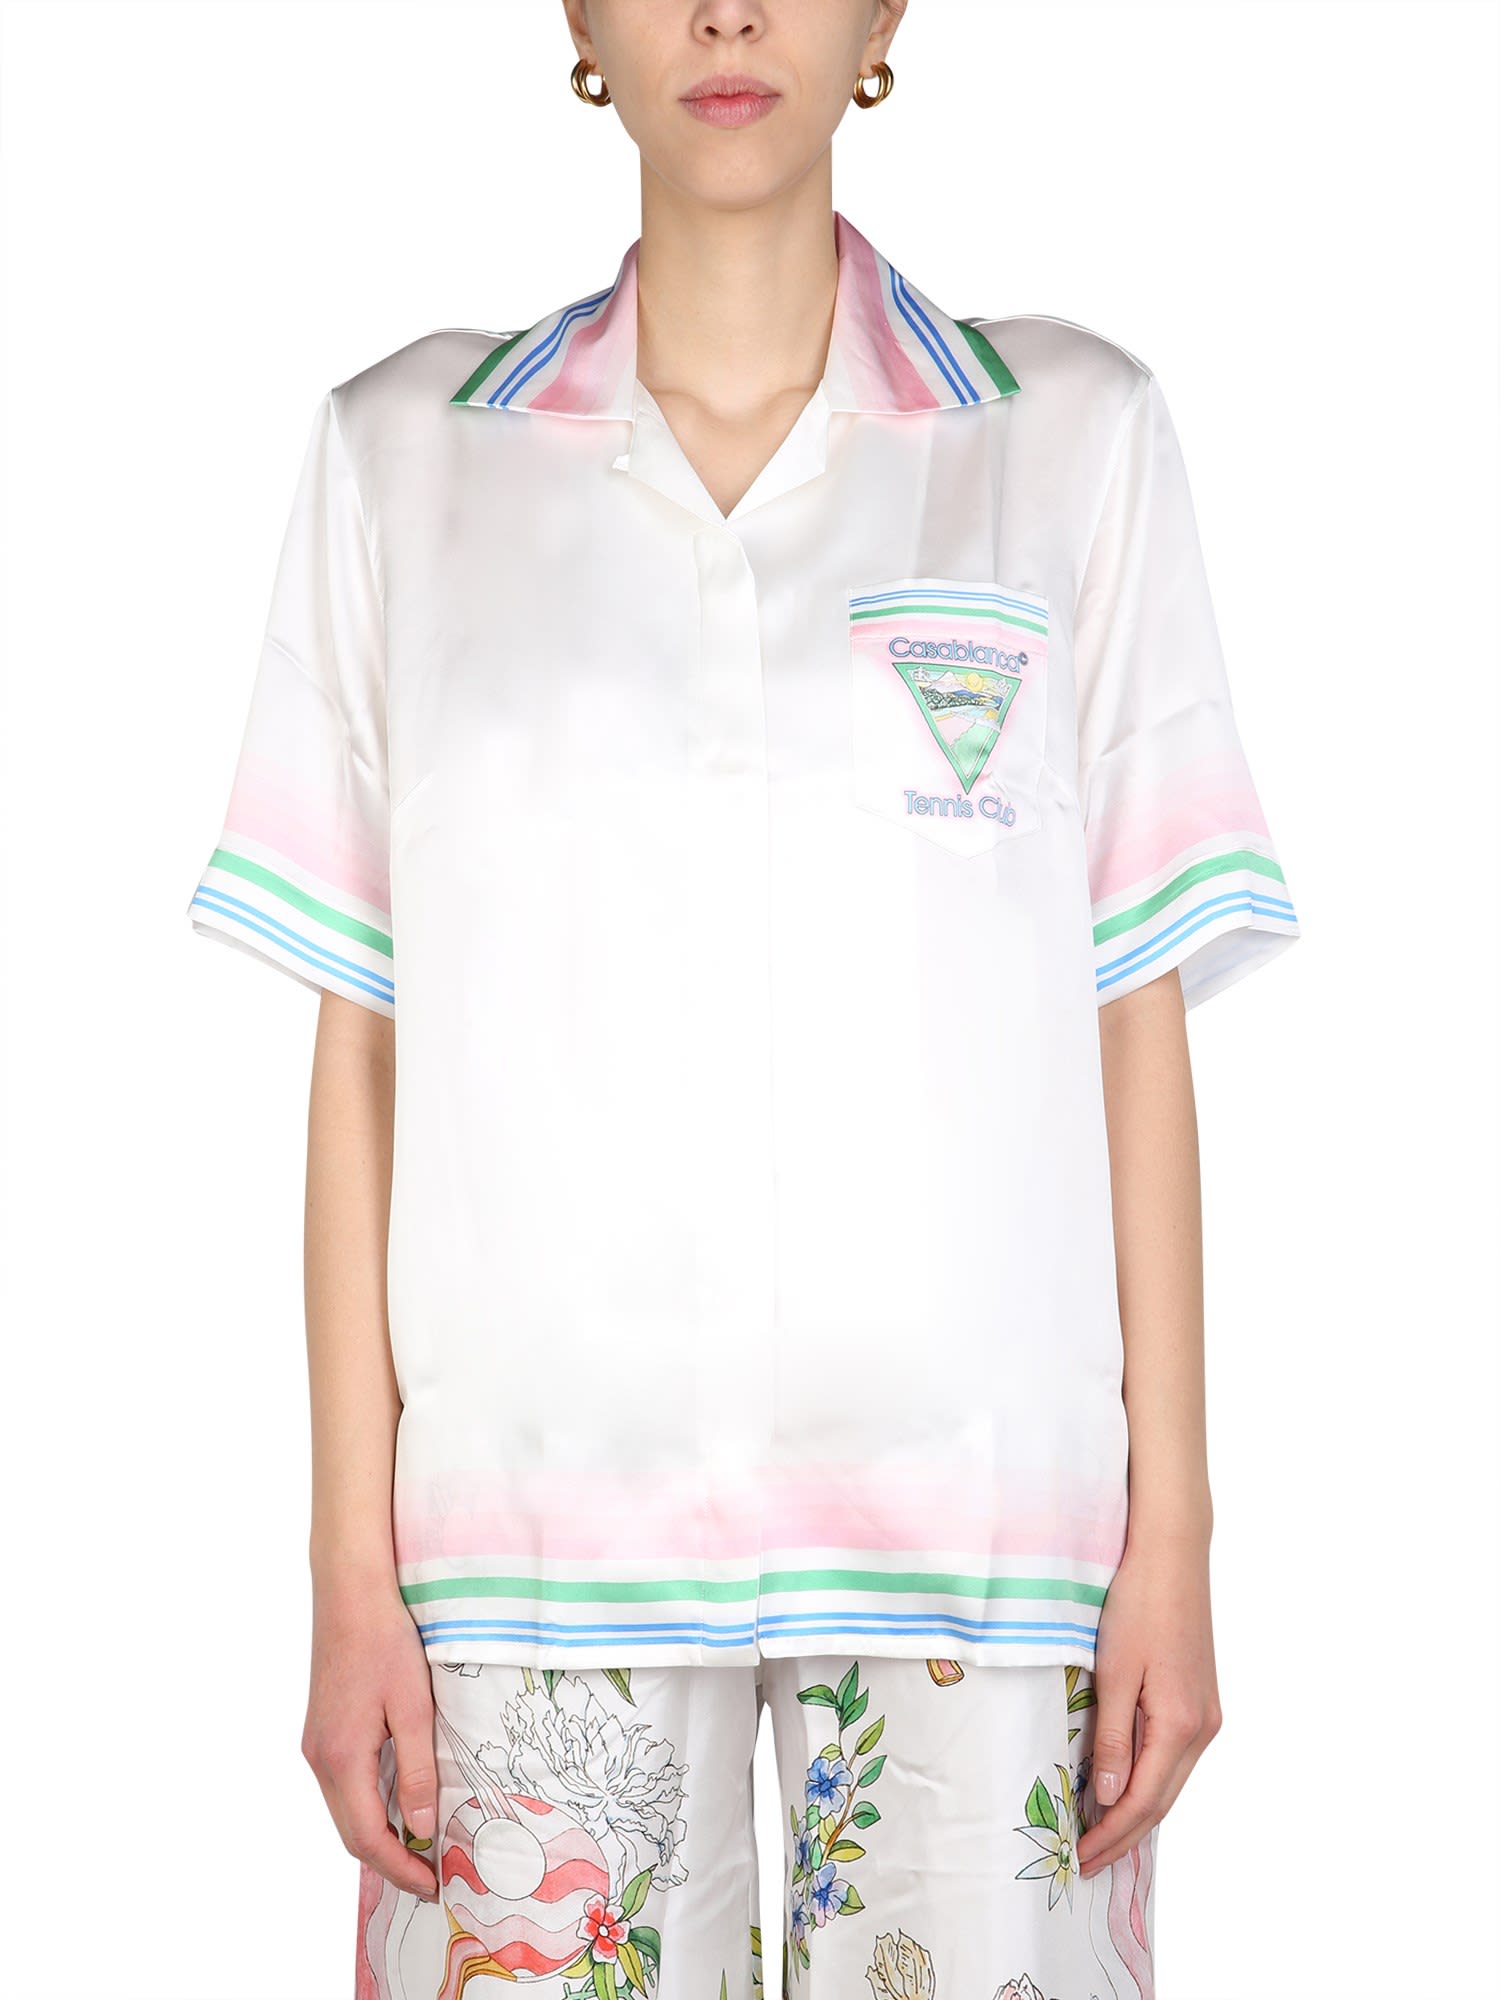 Casablanca tennis Club Shirt